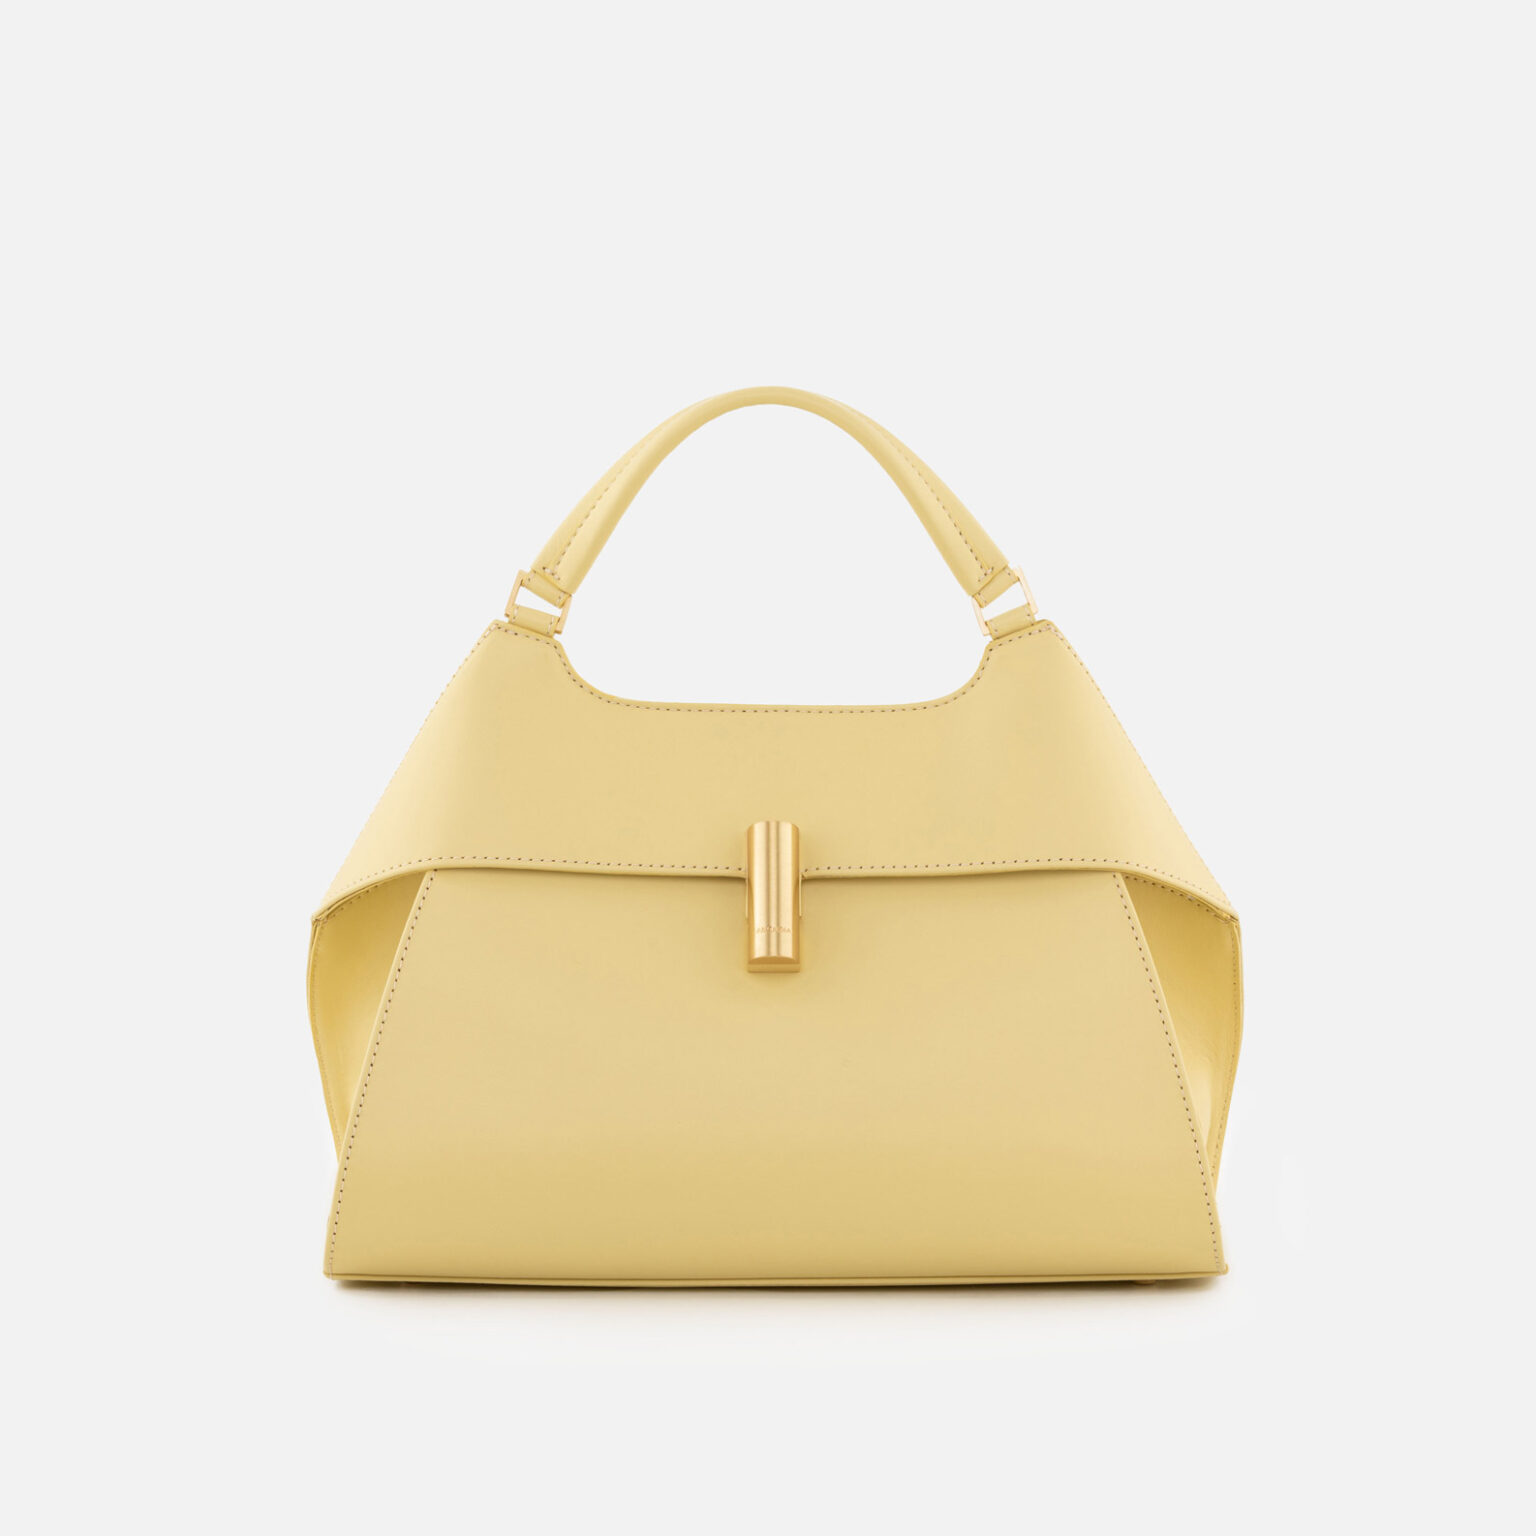 Arcadia® | Italian Leather Handbags | Alternative Luxury